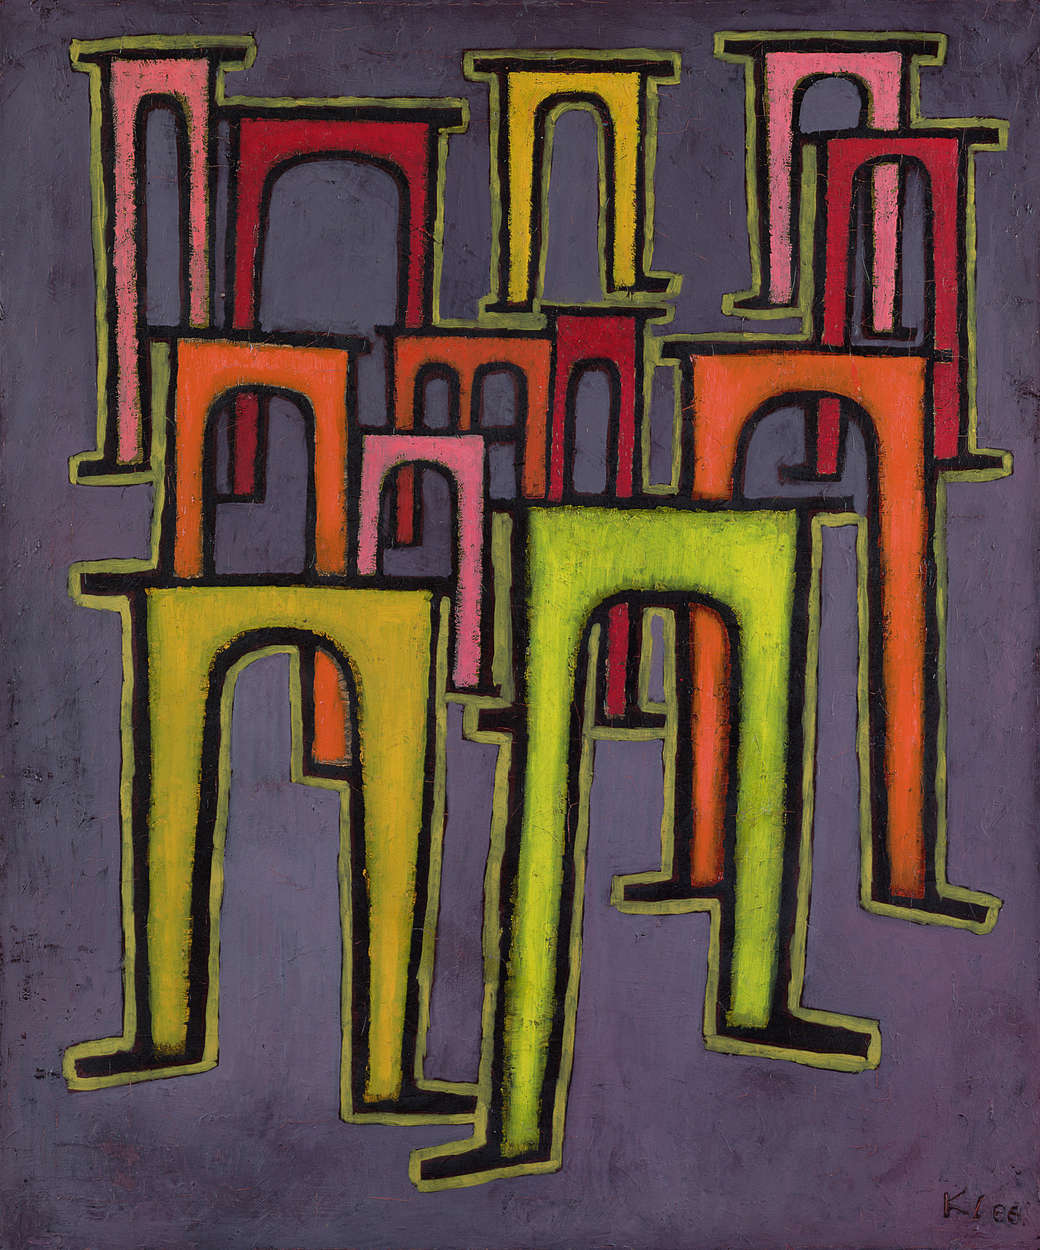             Fototapete "Revolution des Viadukts" von Paul Klee
        